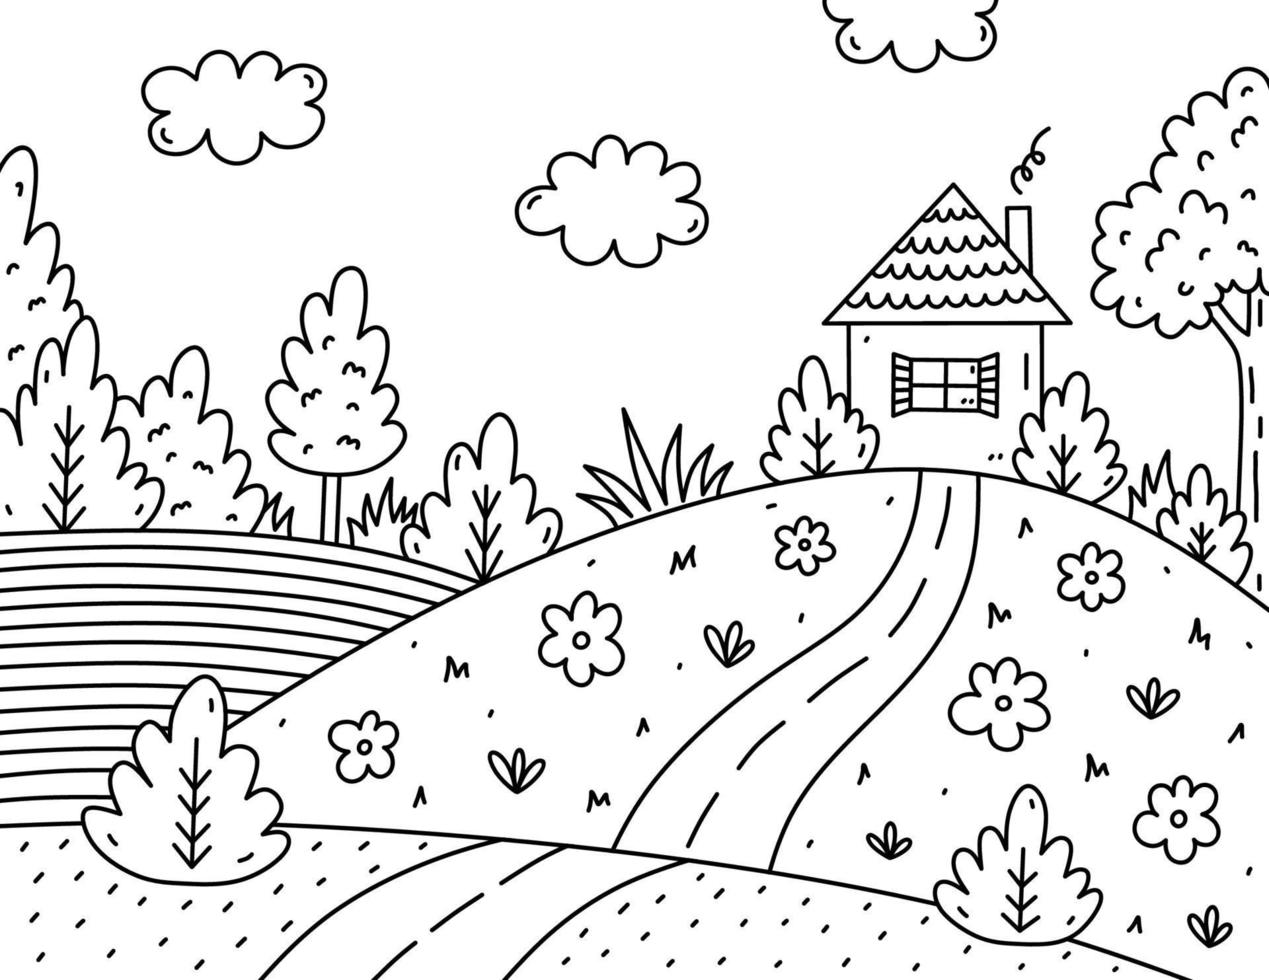 page de coloriage d'enfants mignons. paysage avec nuages, maison, arbres, buissons, fleurs, champ et route. illustration vectorielle dessinée à la main dans un style doodle. livre de coloriage de dessin animé pour les enfants. vecteur